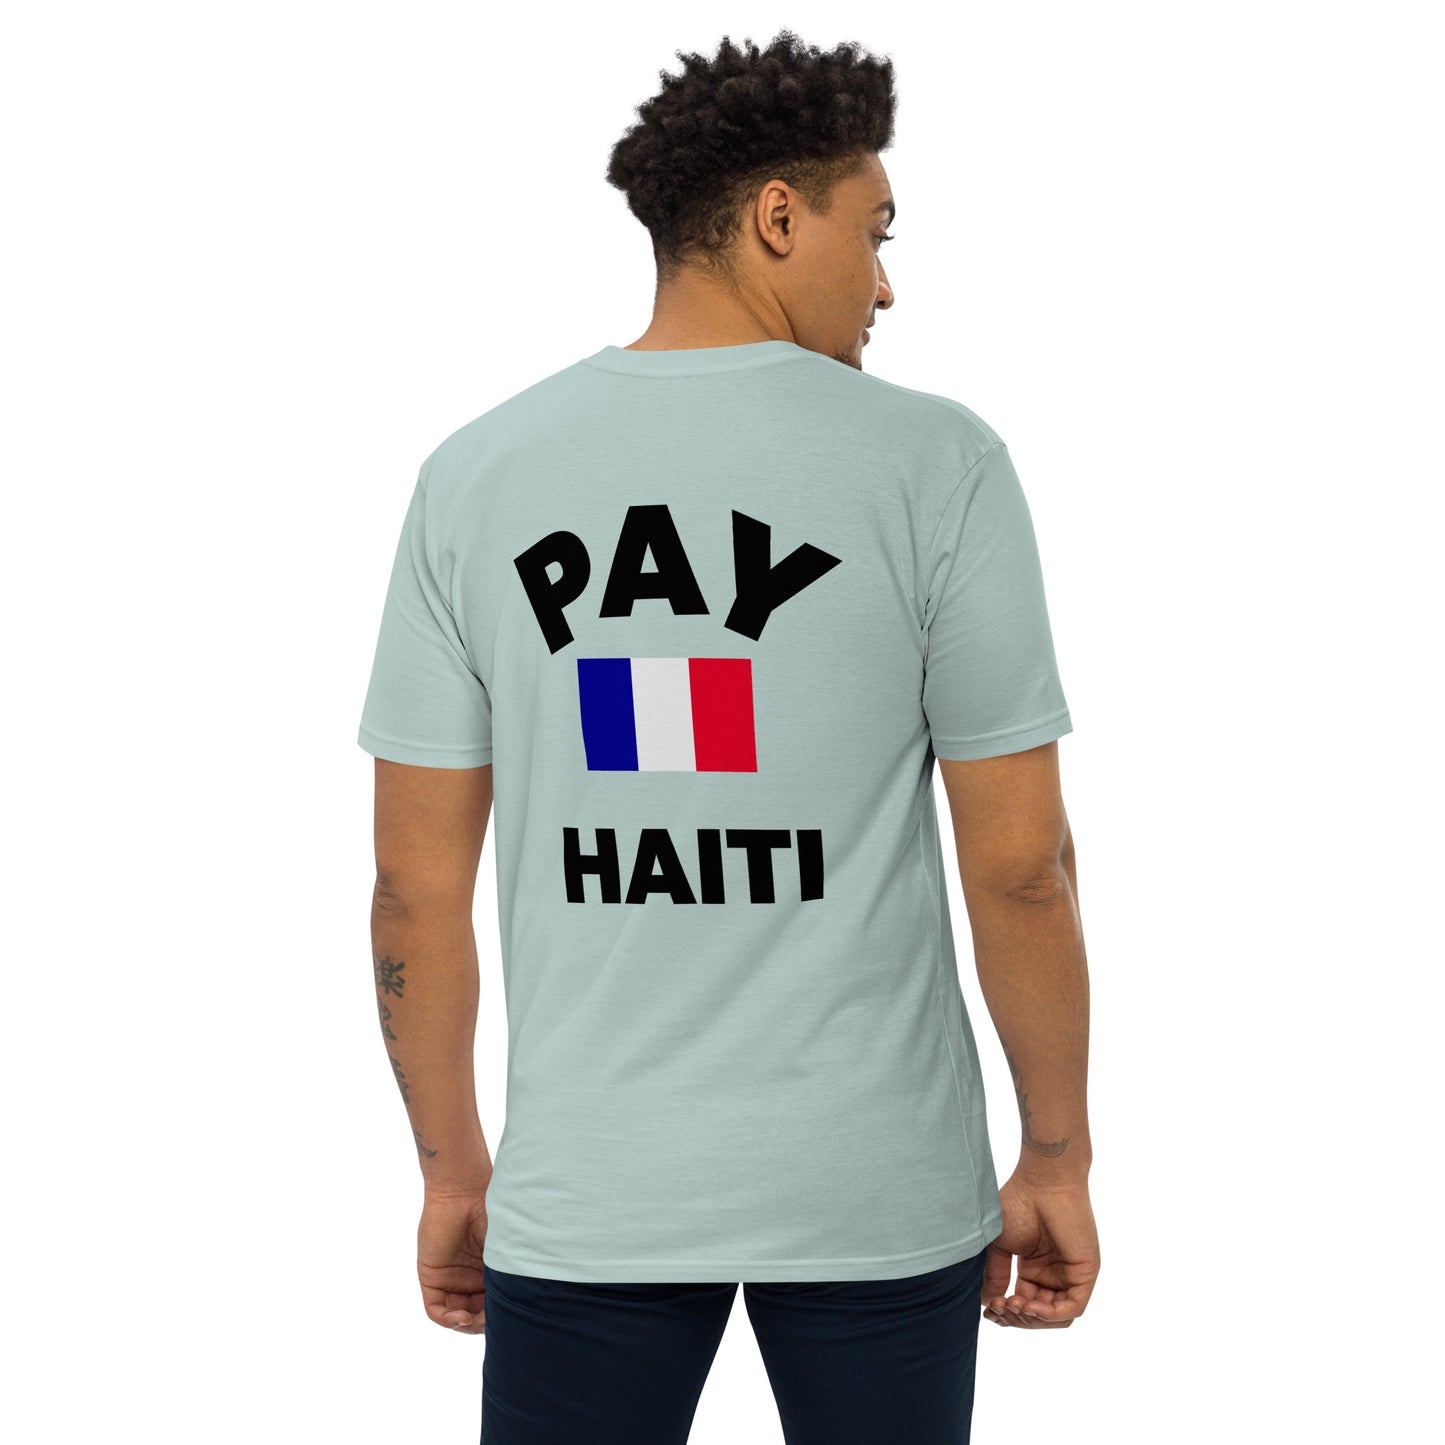 Pay Haiti Tee Premium Heavyweight Tee